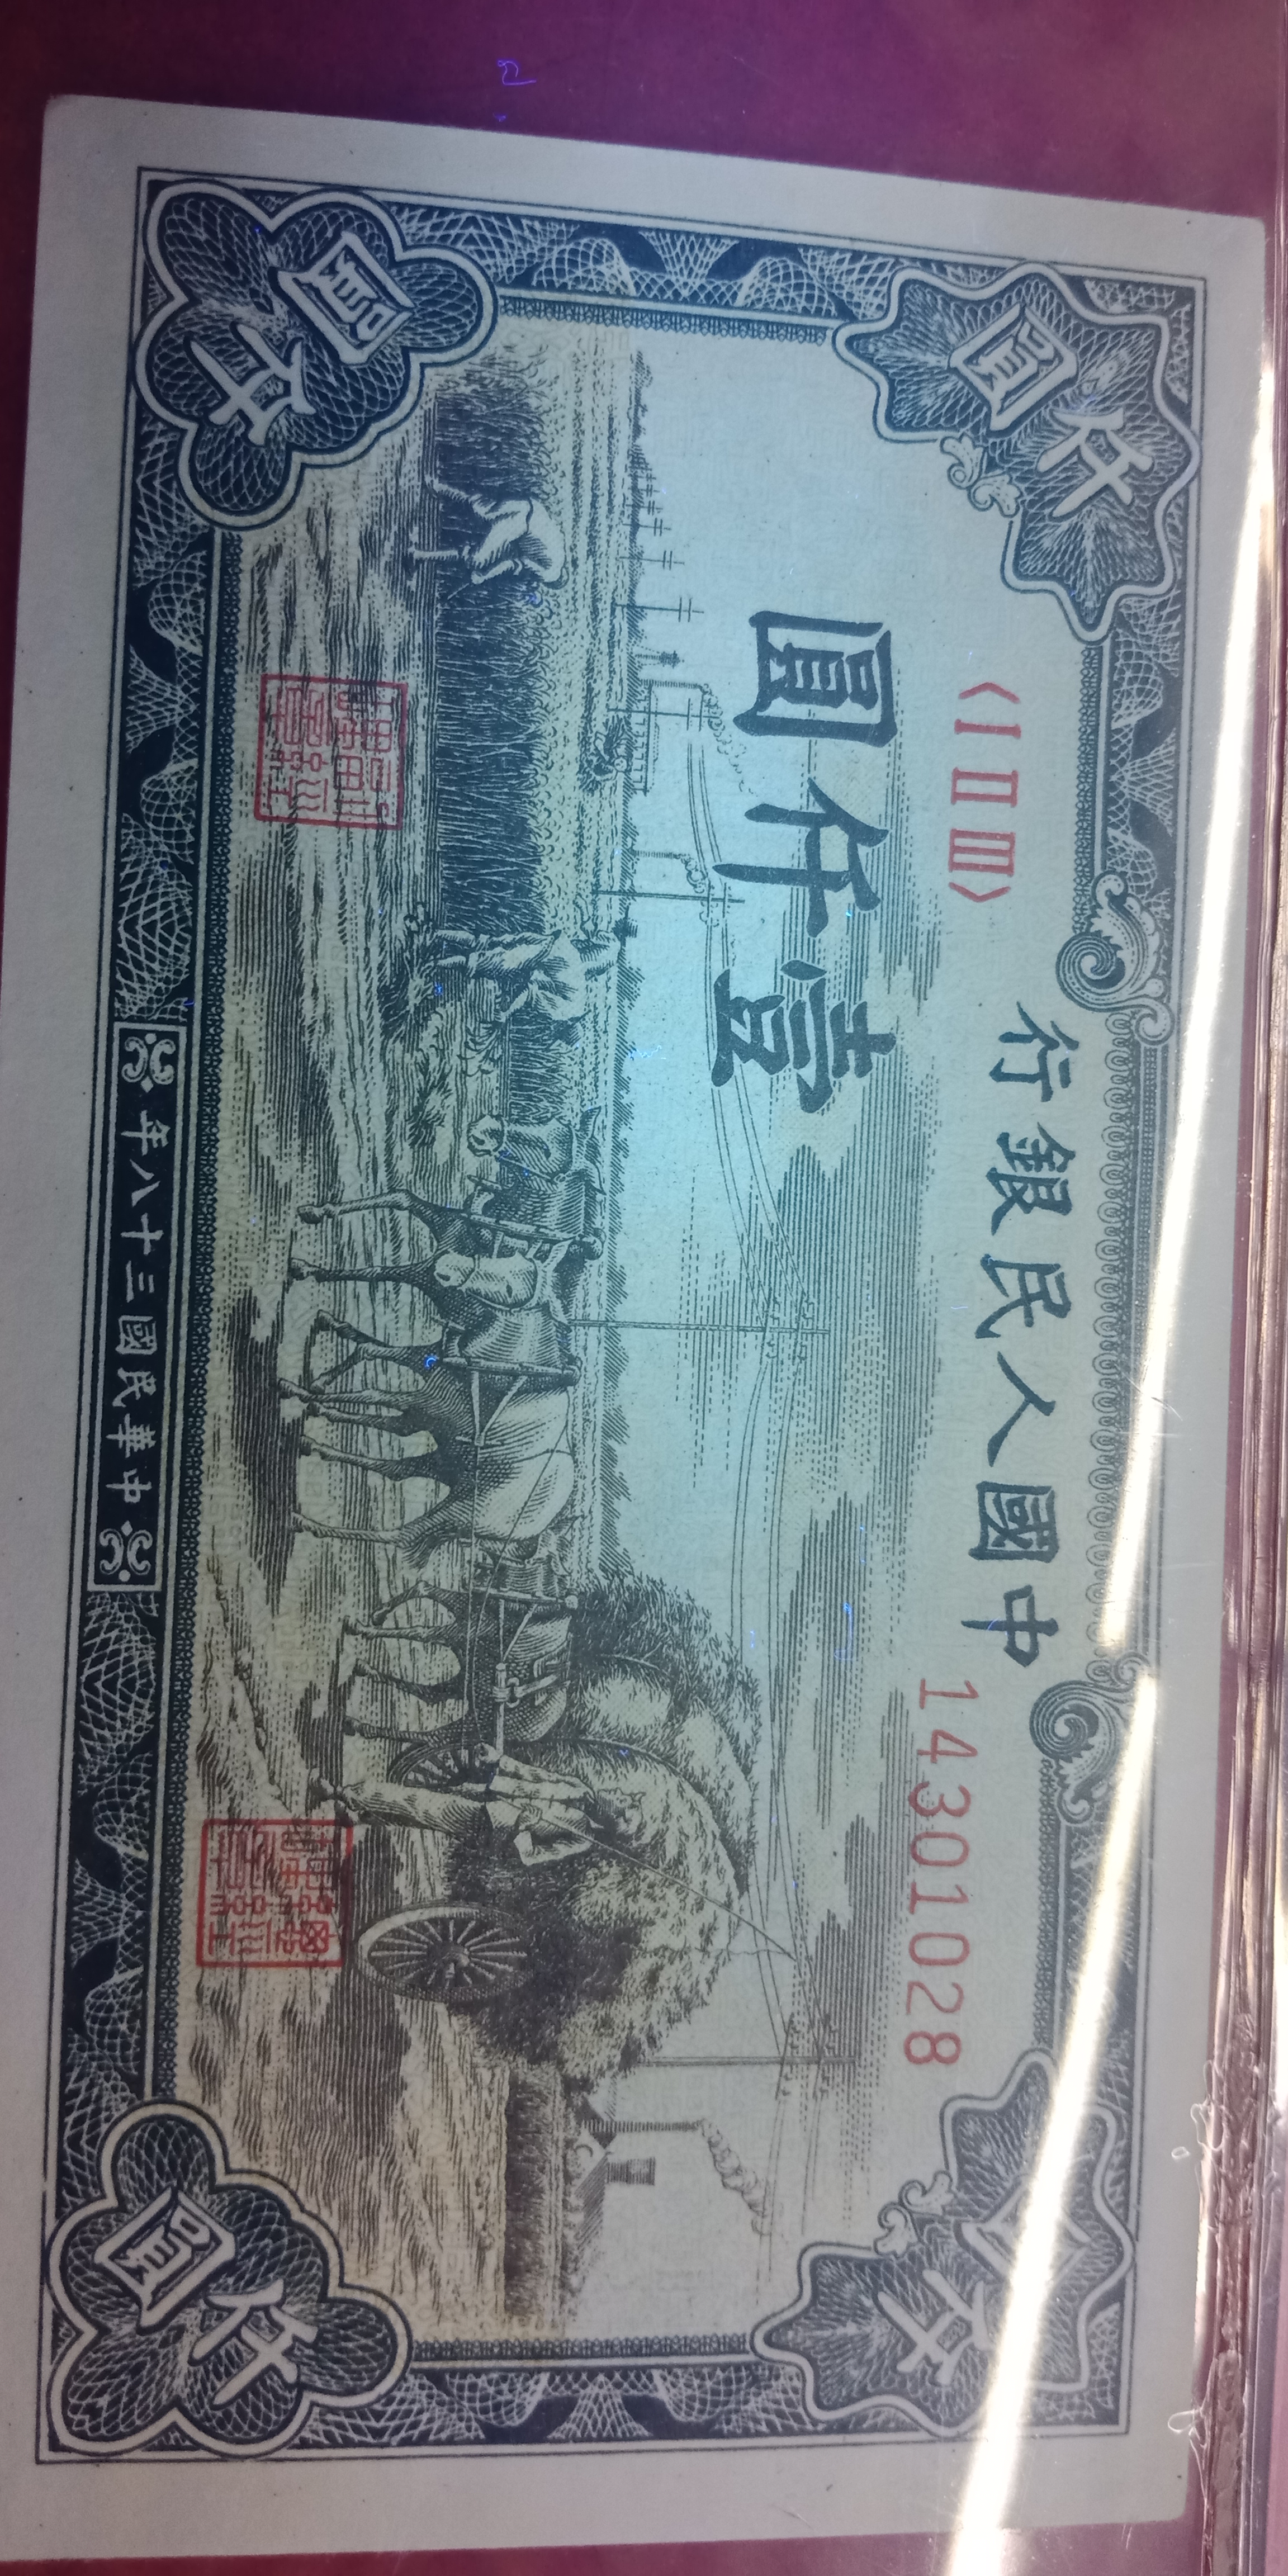 一千元面值的人民币图片